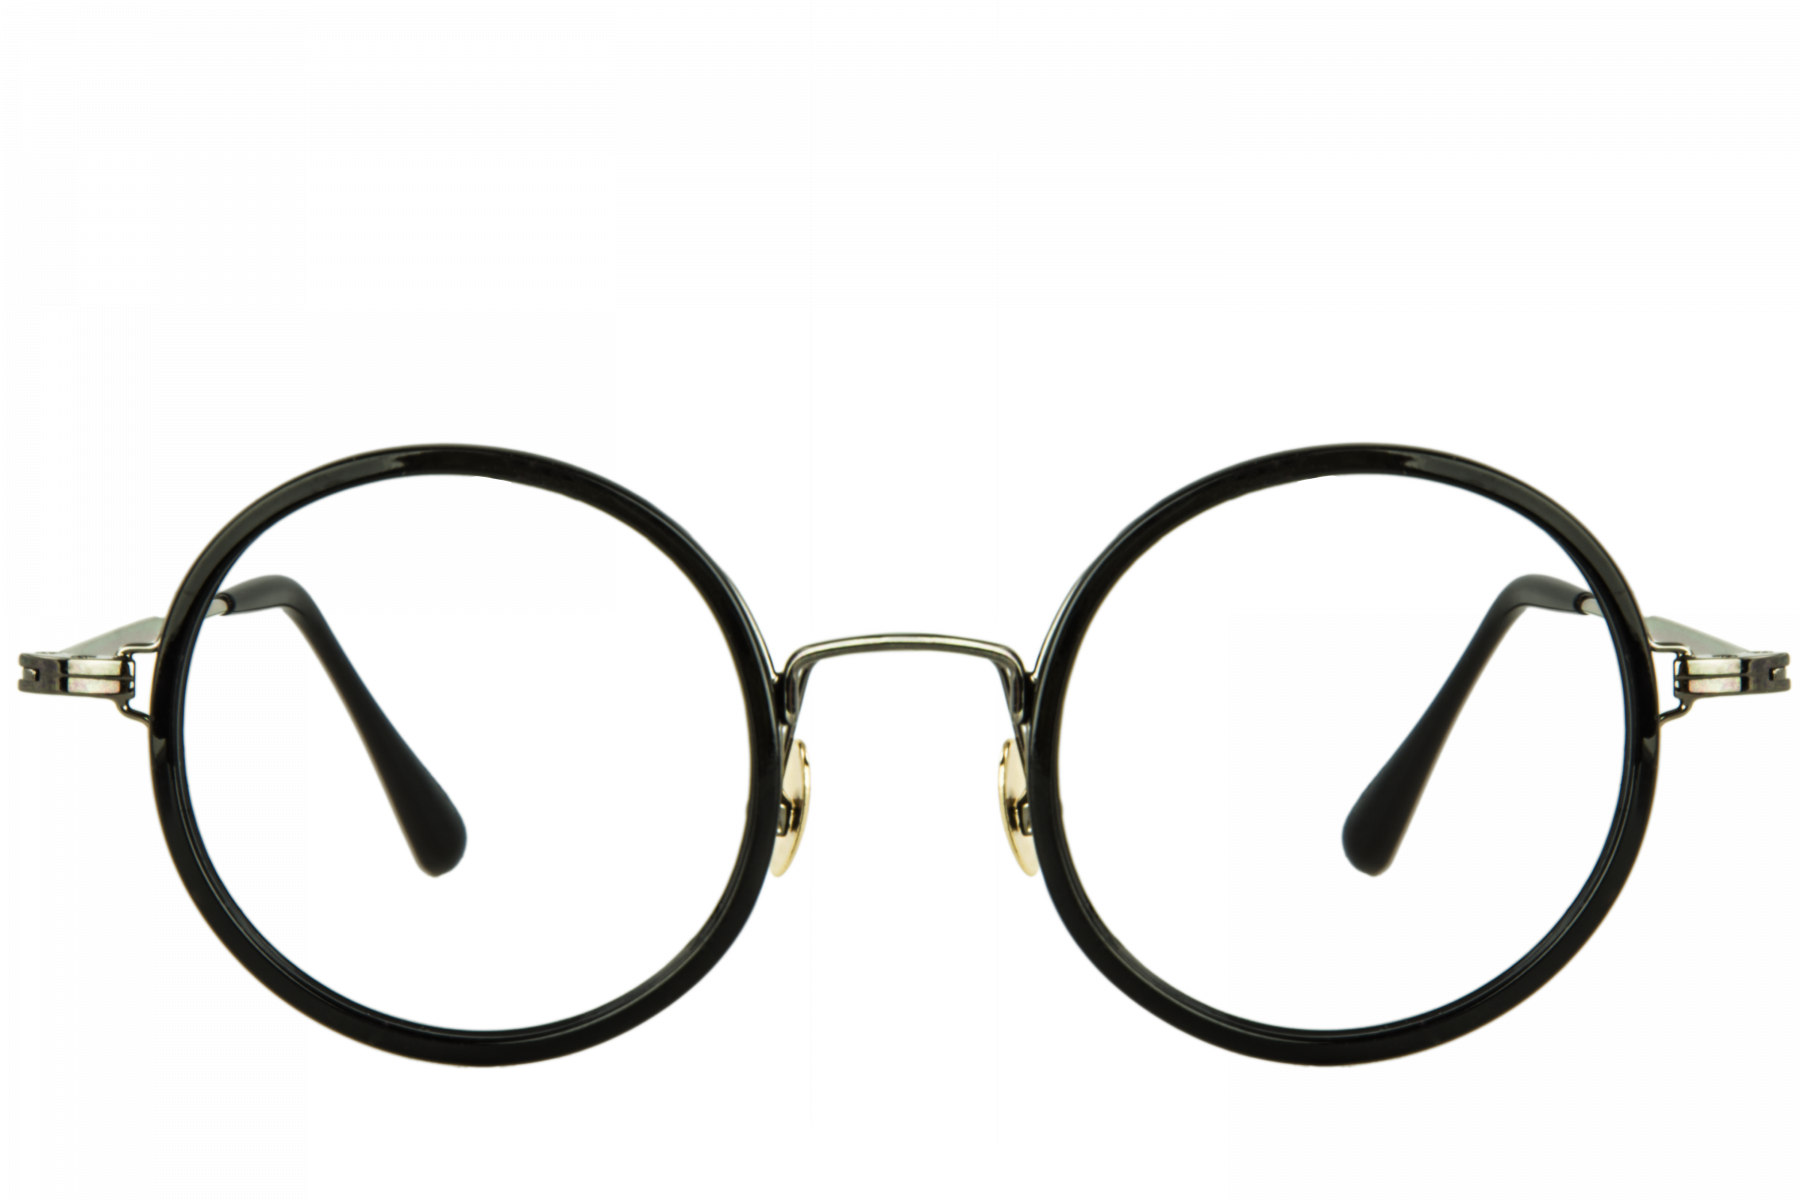 Kacamata